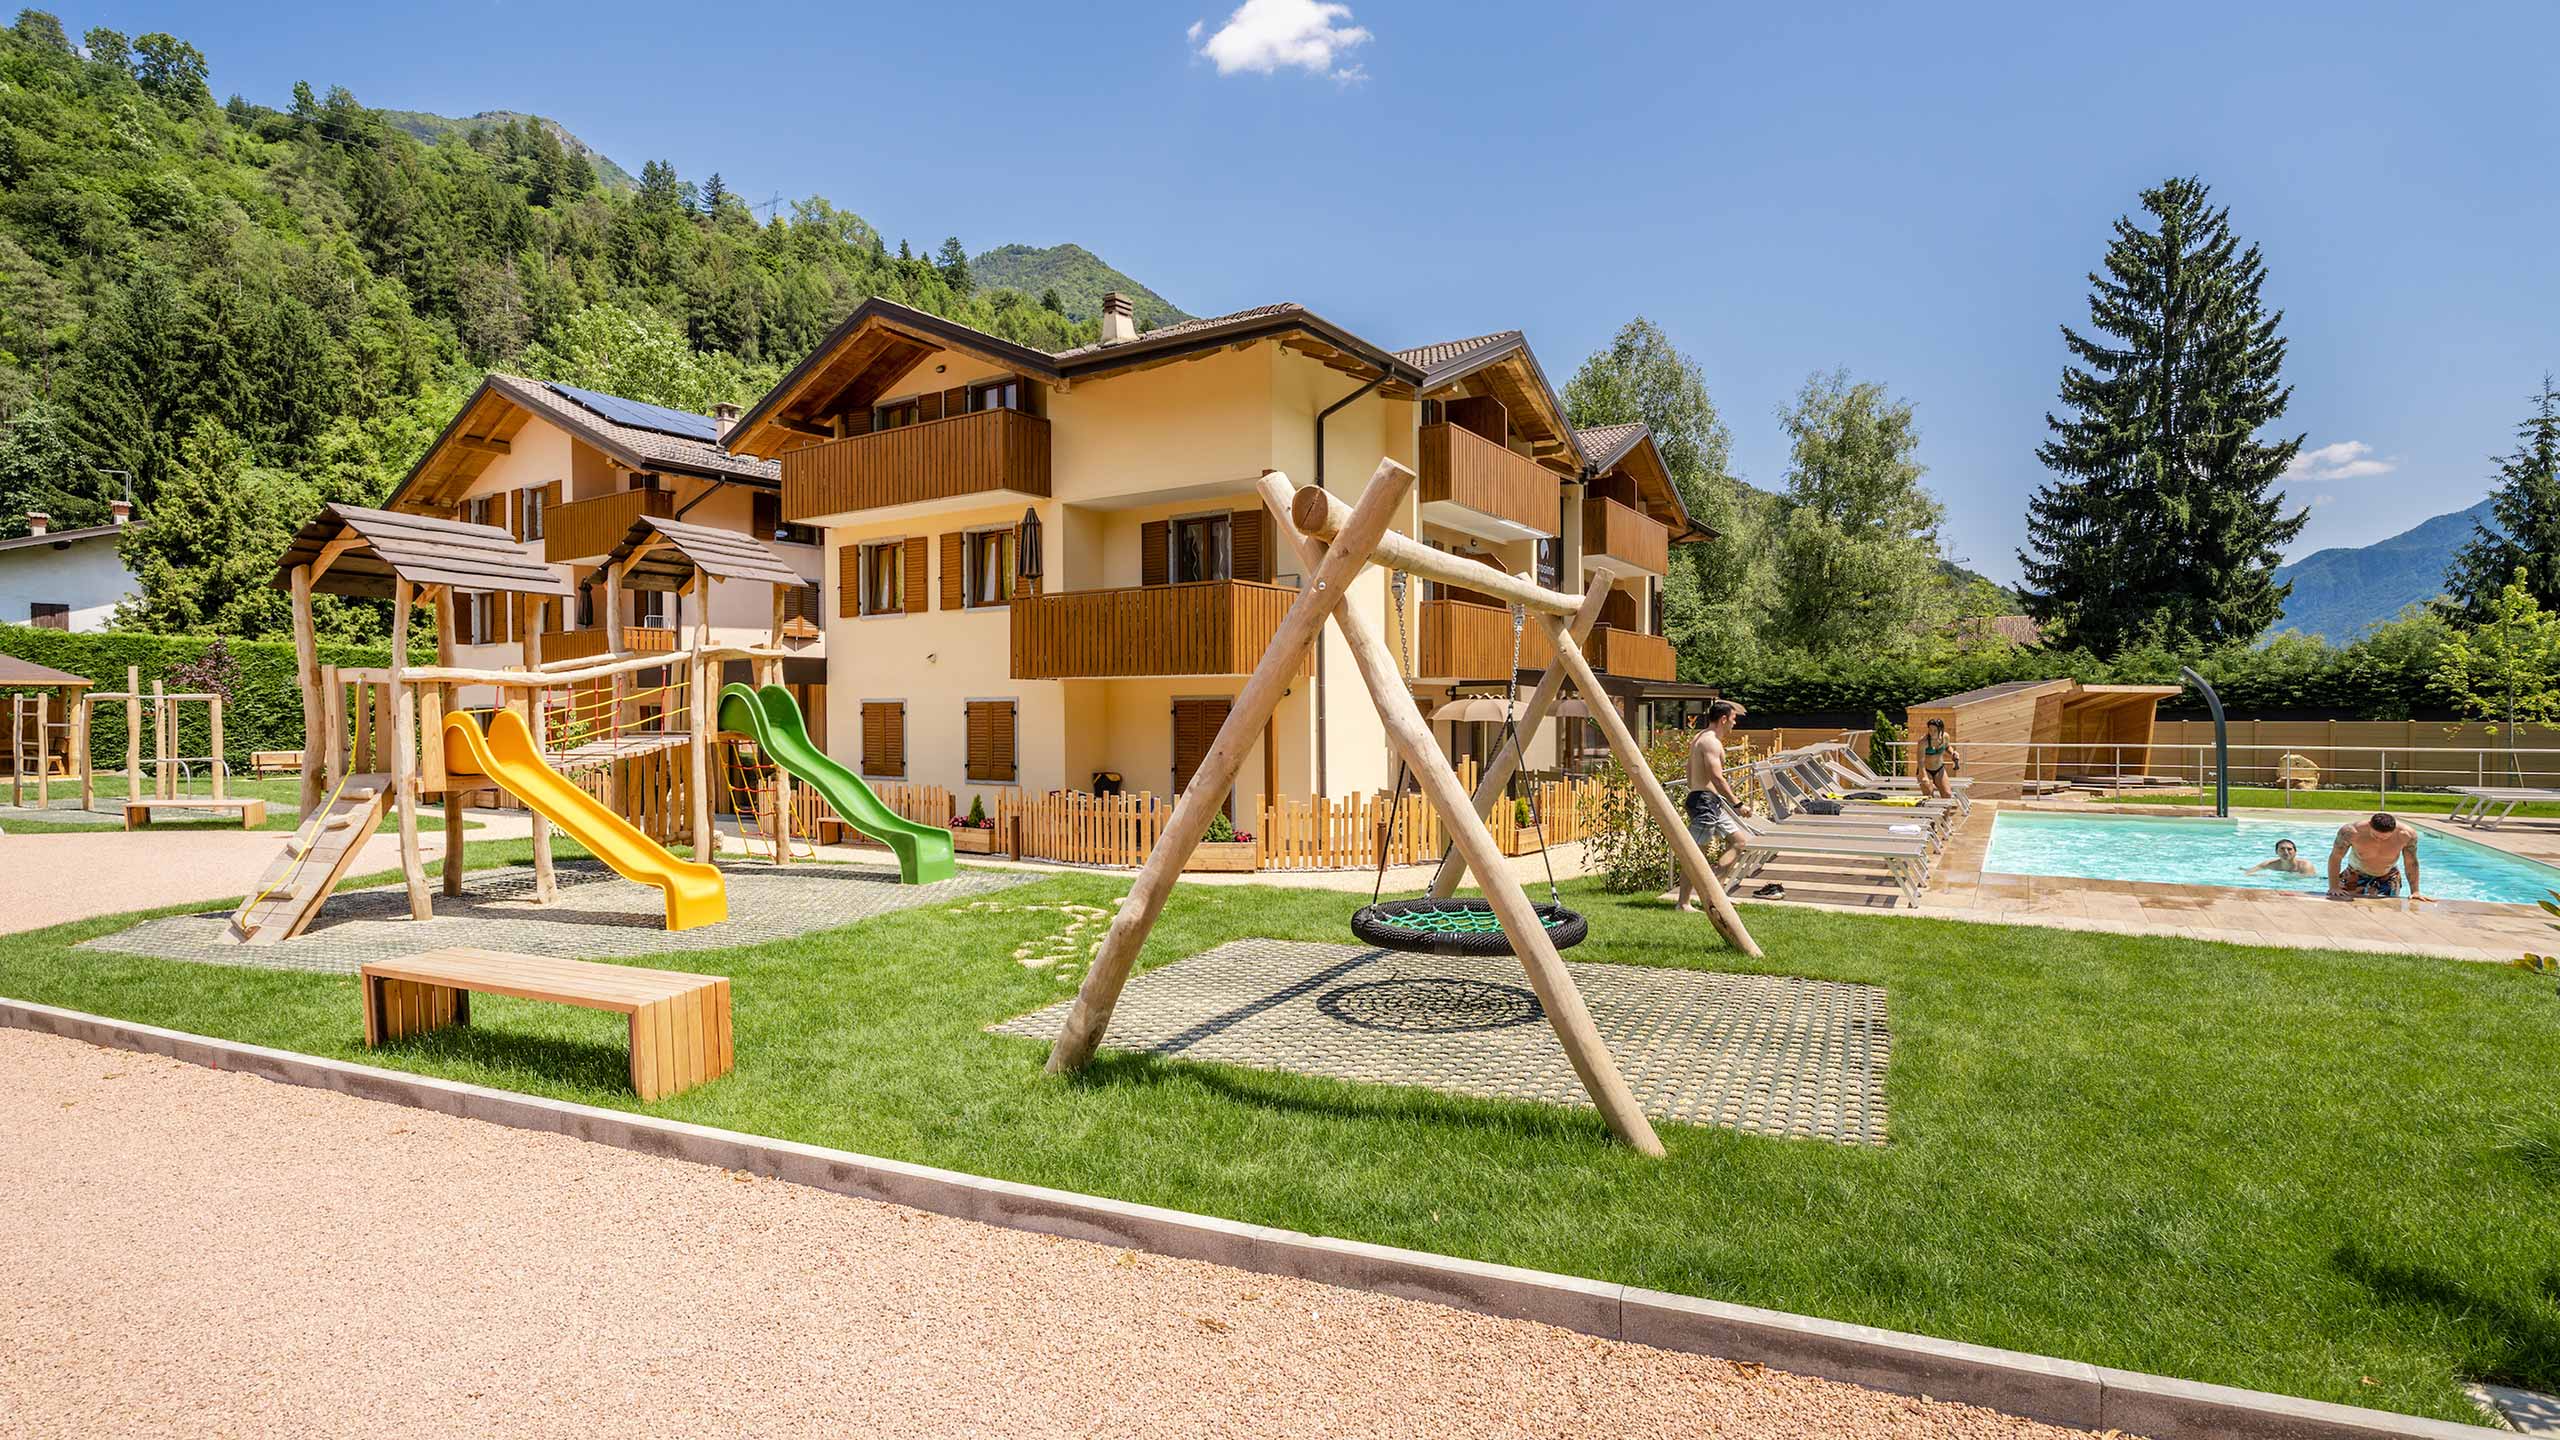 Crosina Holiday – Ferienwohnungen in der Nähe des Ledrosees im Trentino für einen Paar- oder Familienurlaub Willkommen in der Residence Toli